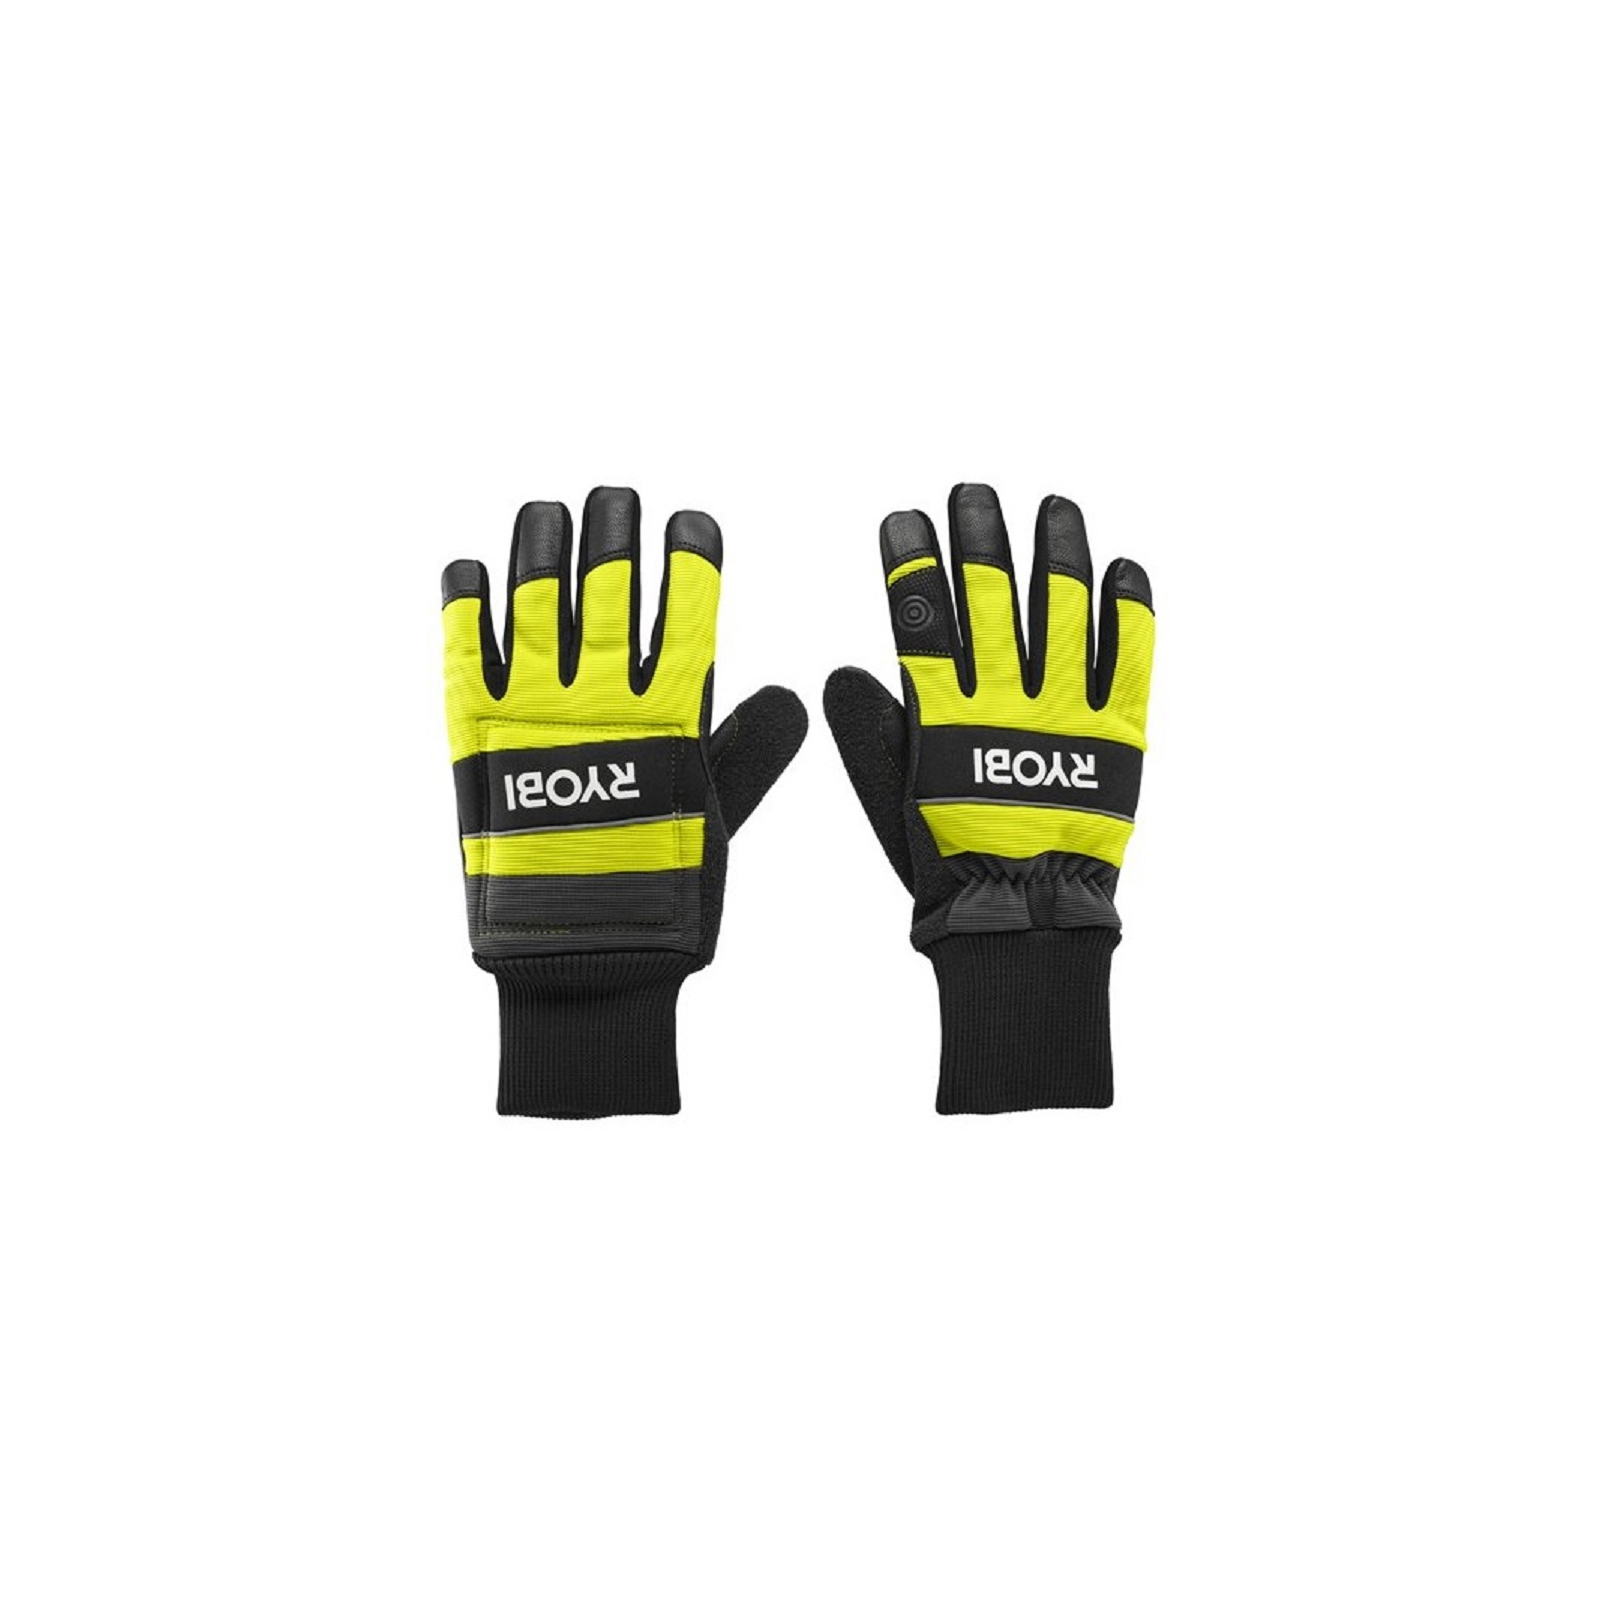 Защитные перчатки Ryobi RAC258XL для работы с цепной пилой влагозащита, р. XL (5132005712)